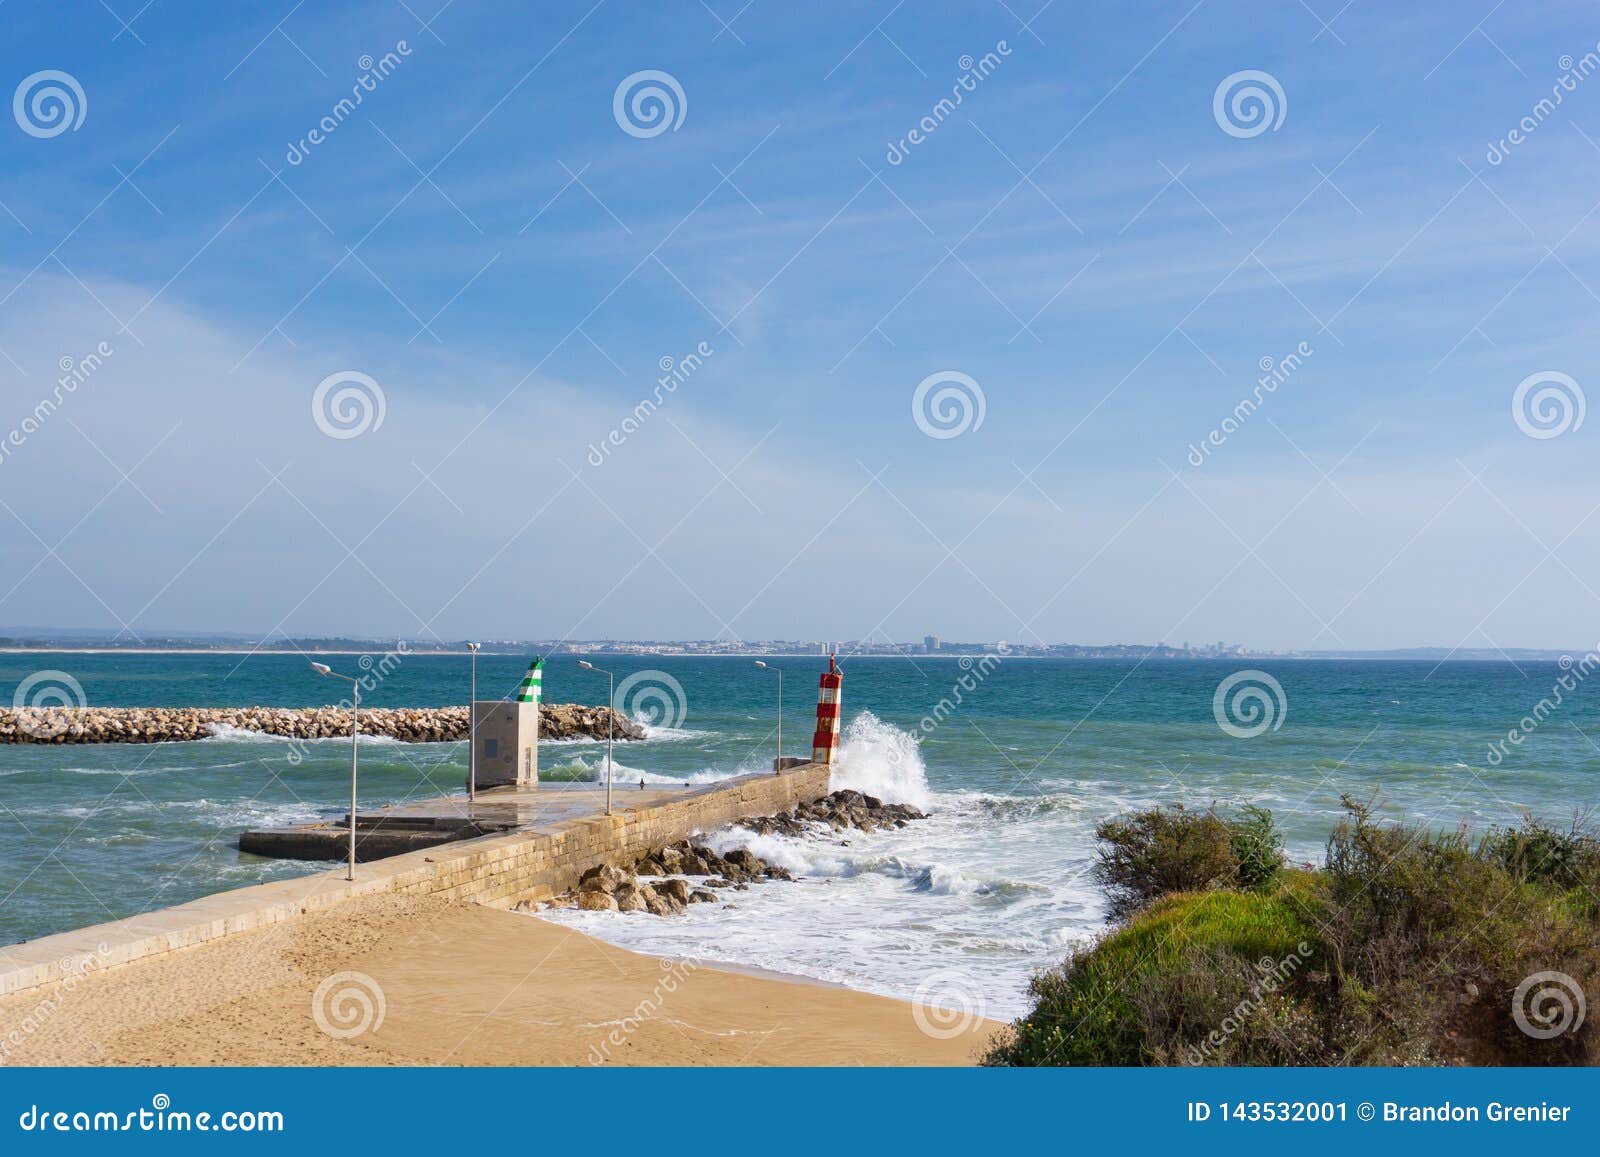 灯塔波浪崩溃拉各斯，葡萄牙. 撞入灯塔的波浪在拉各斯，有城市的葡萄牙距离的